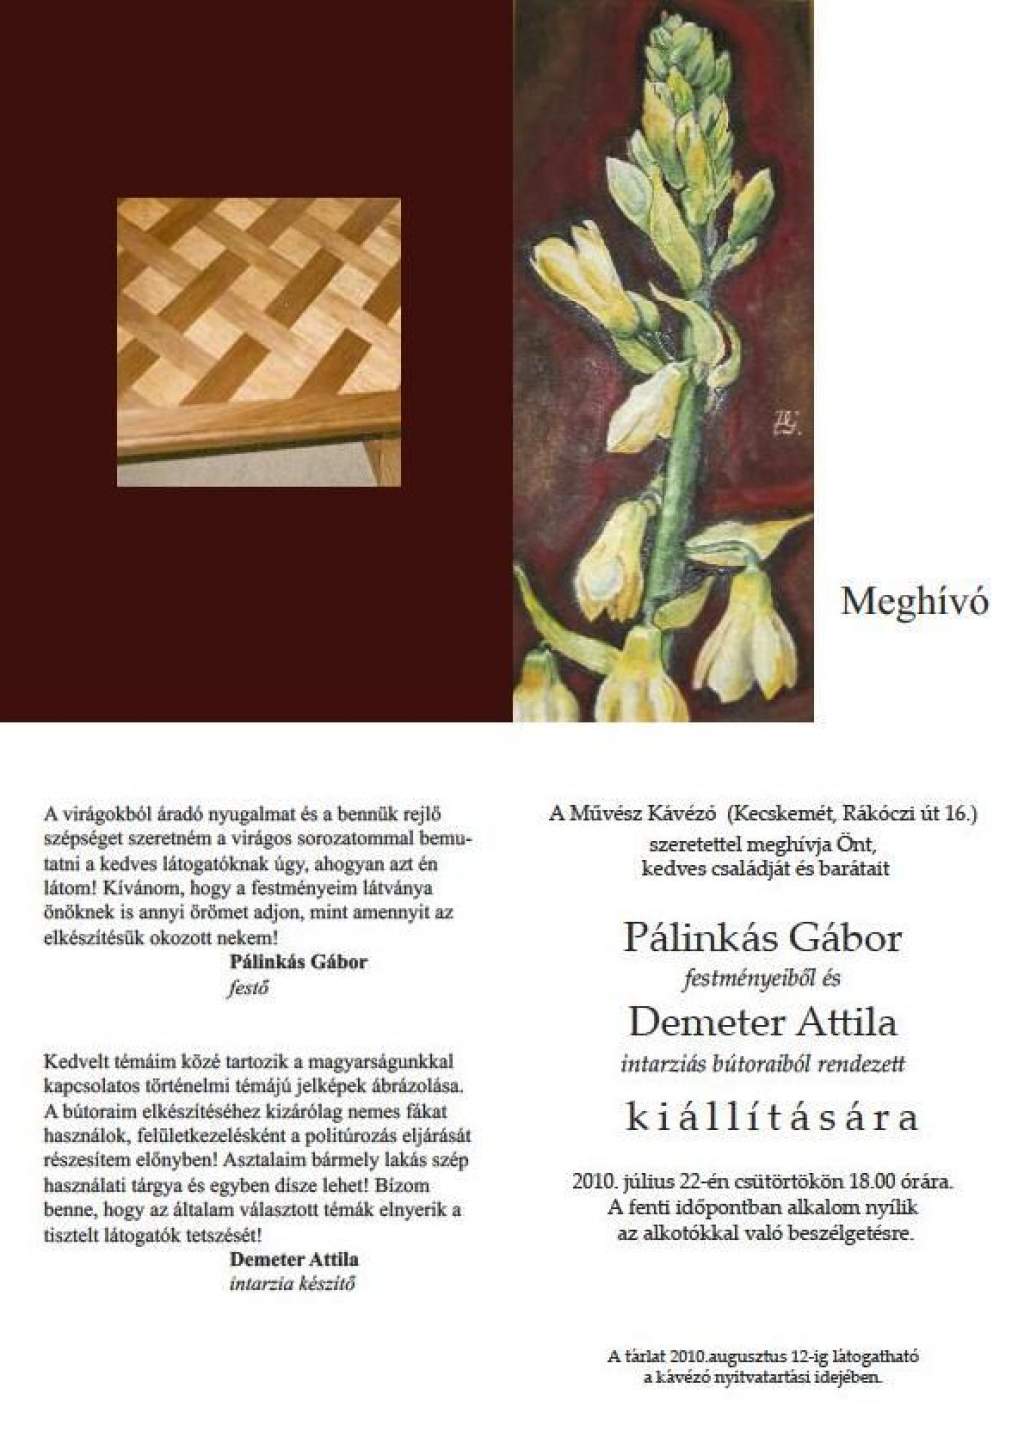 Festmények - mintás bútorok: kiállítás a Művész Kávézóban